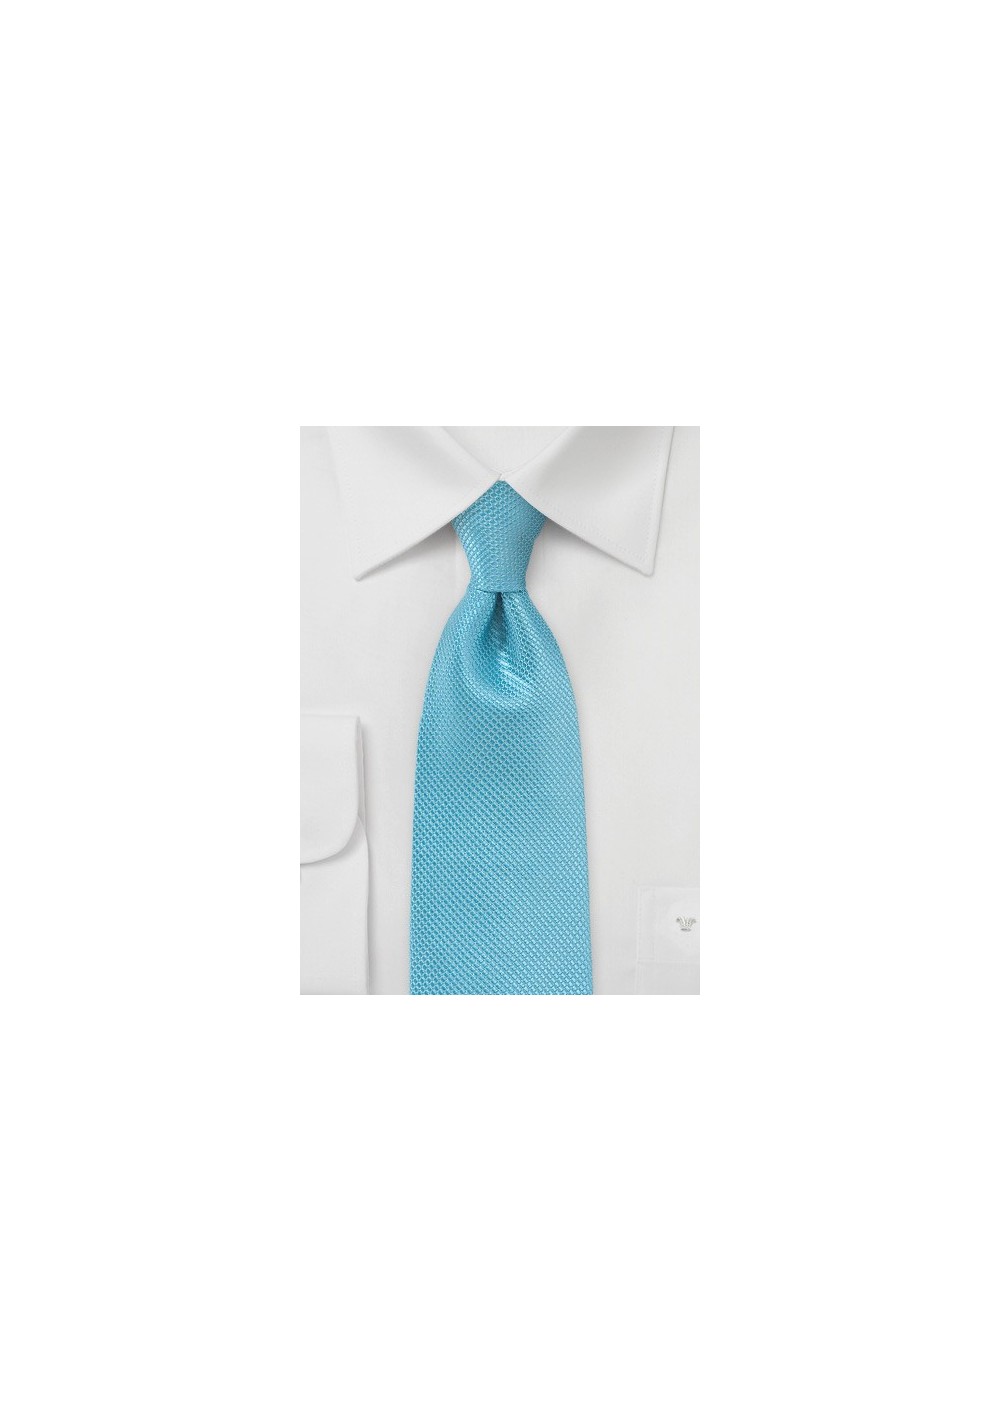 Sailboat Blue Silk Tie in Kids Size